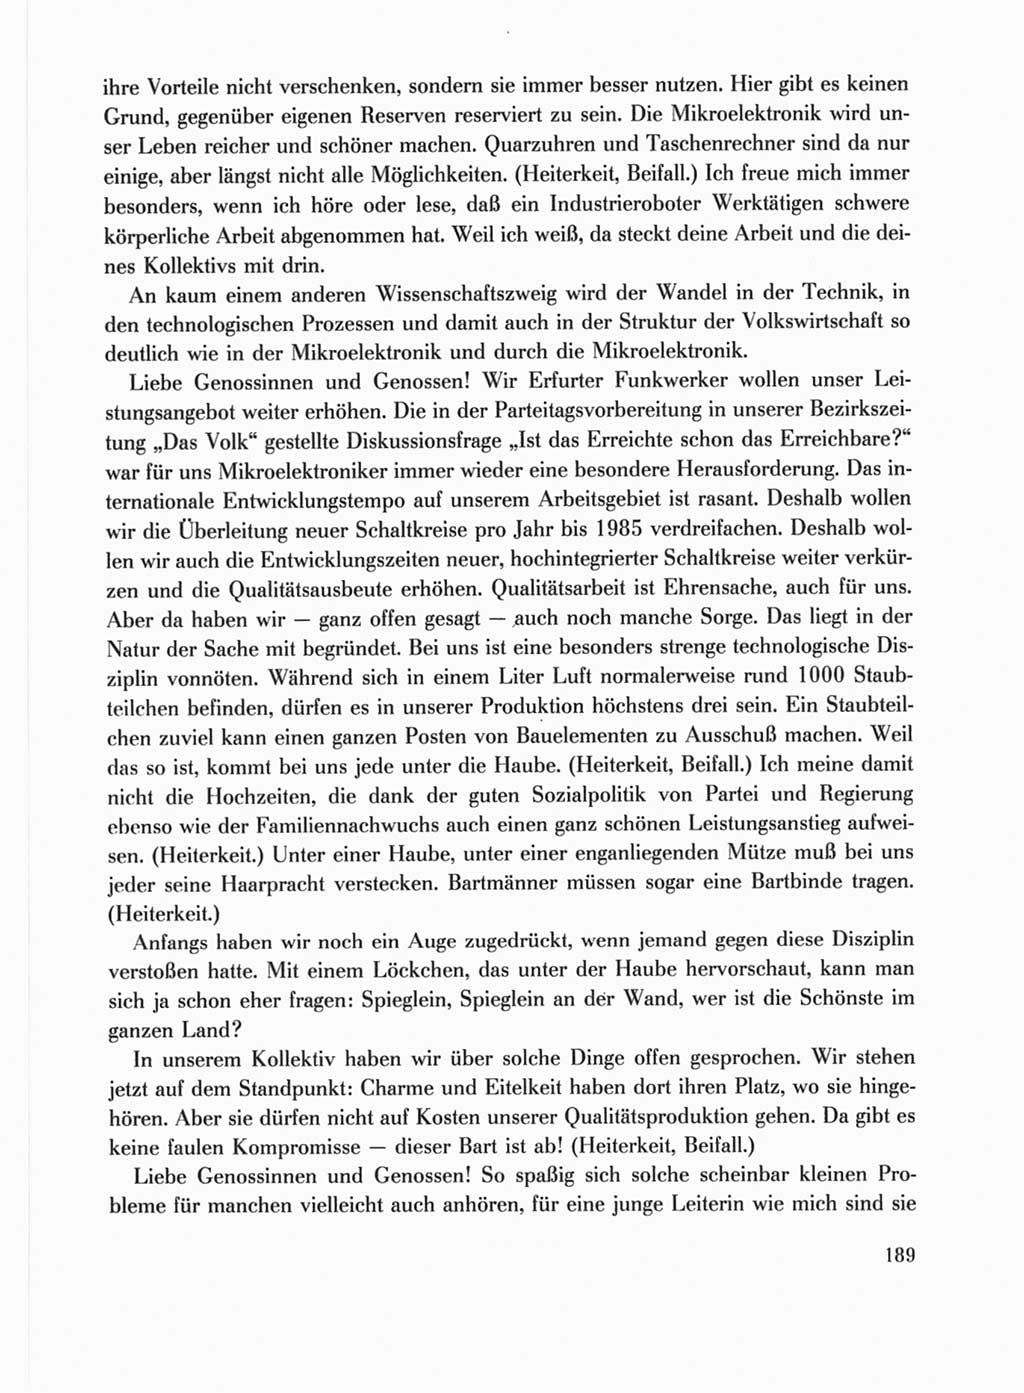 Protokoll der Verhandlungen des Ⅹ. Parteitages der Sozialistischen Einheitspartei Deutschlands (SED) [Deutsche Demokratische Republik (DDR)] 1981, Band 1, Seite 189 (Prot. Verh. Ⅹ. PT SED DDR 1981, Bd. 1, S. 189)